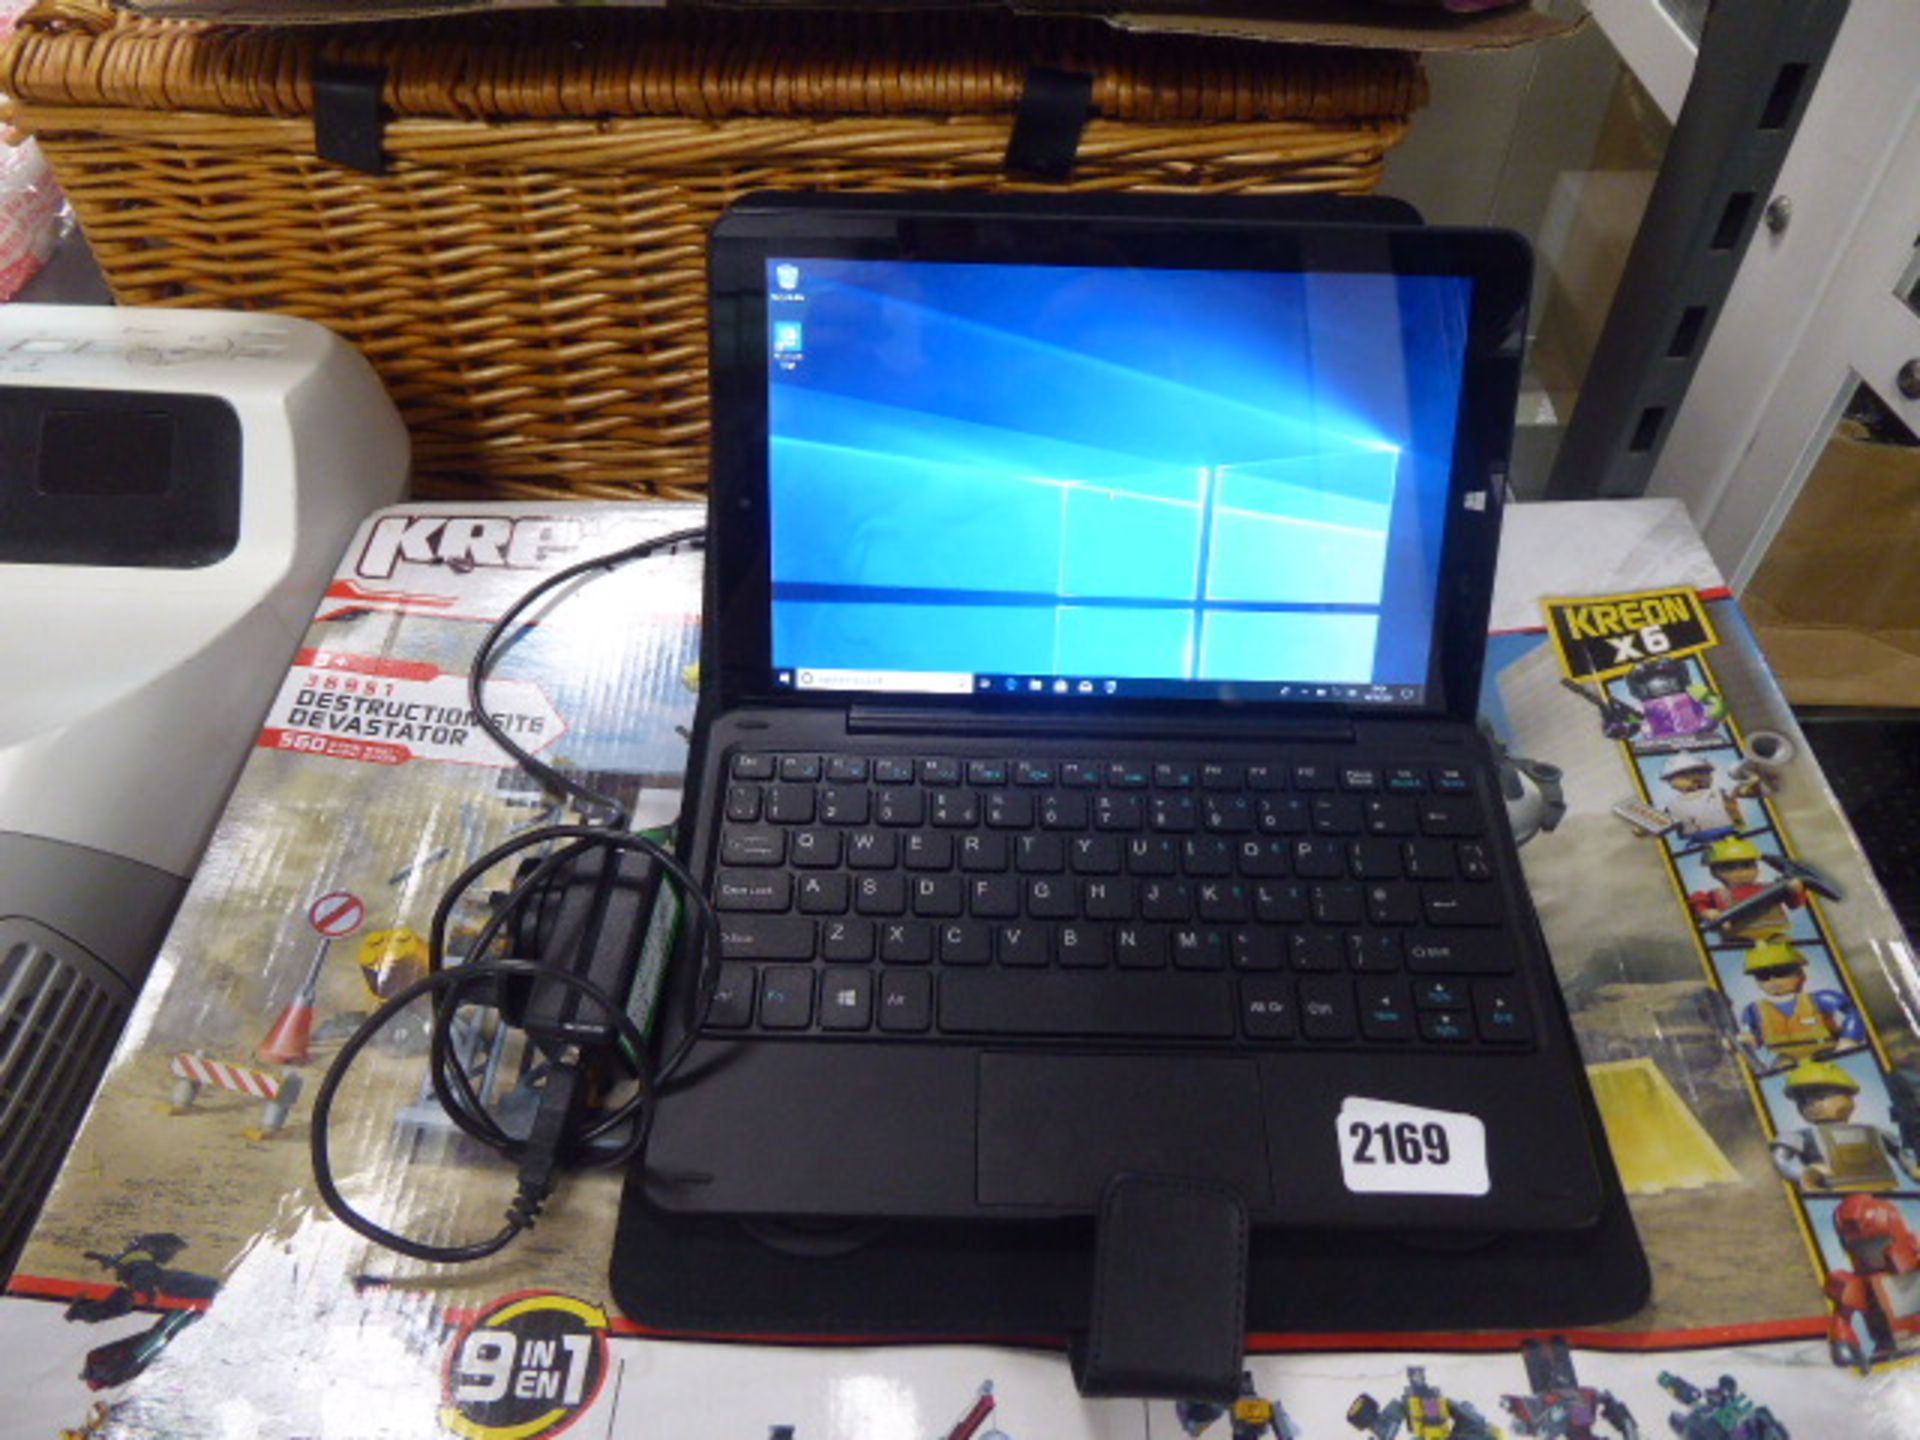 2027 - Lynix 1010B tablet 1.1 unit with attachable keyboard, Intel Atom processor, 2gb ram, 32gb